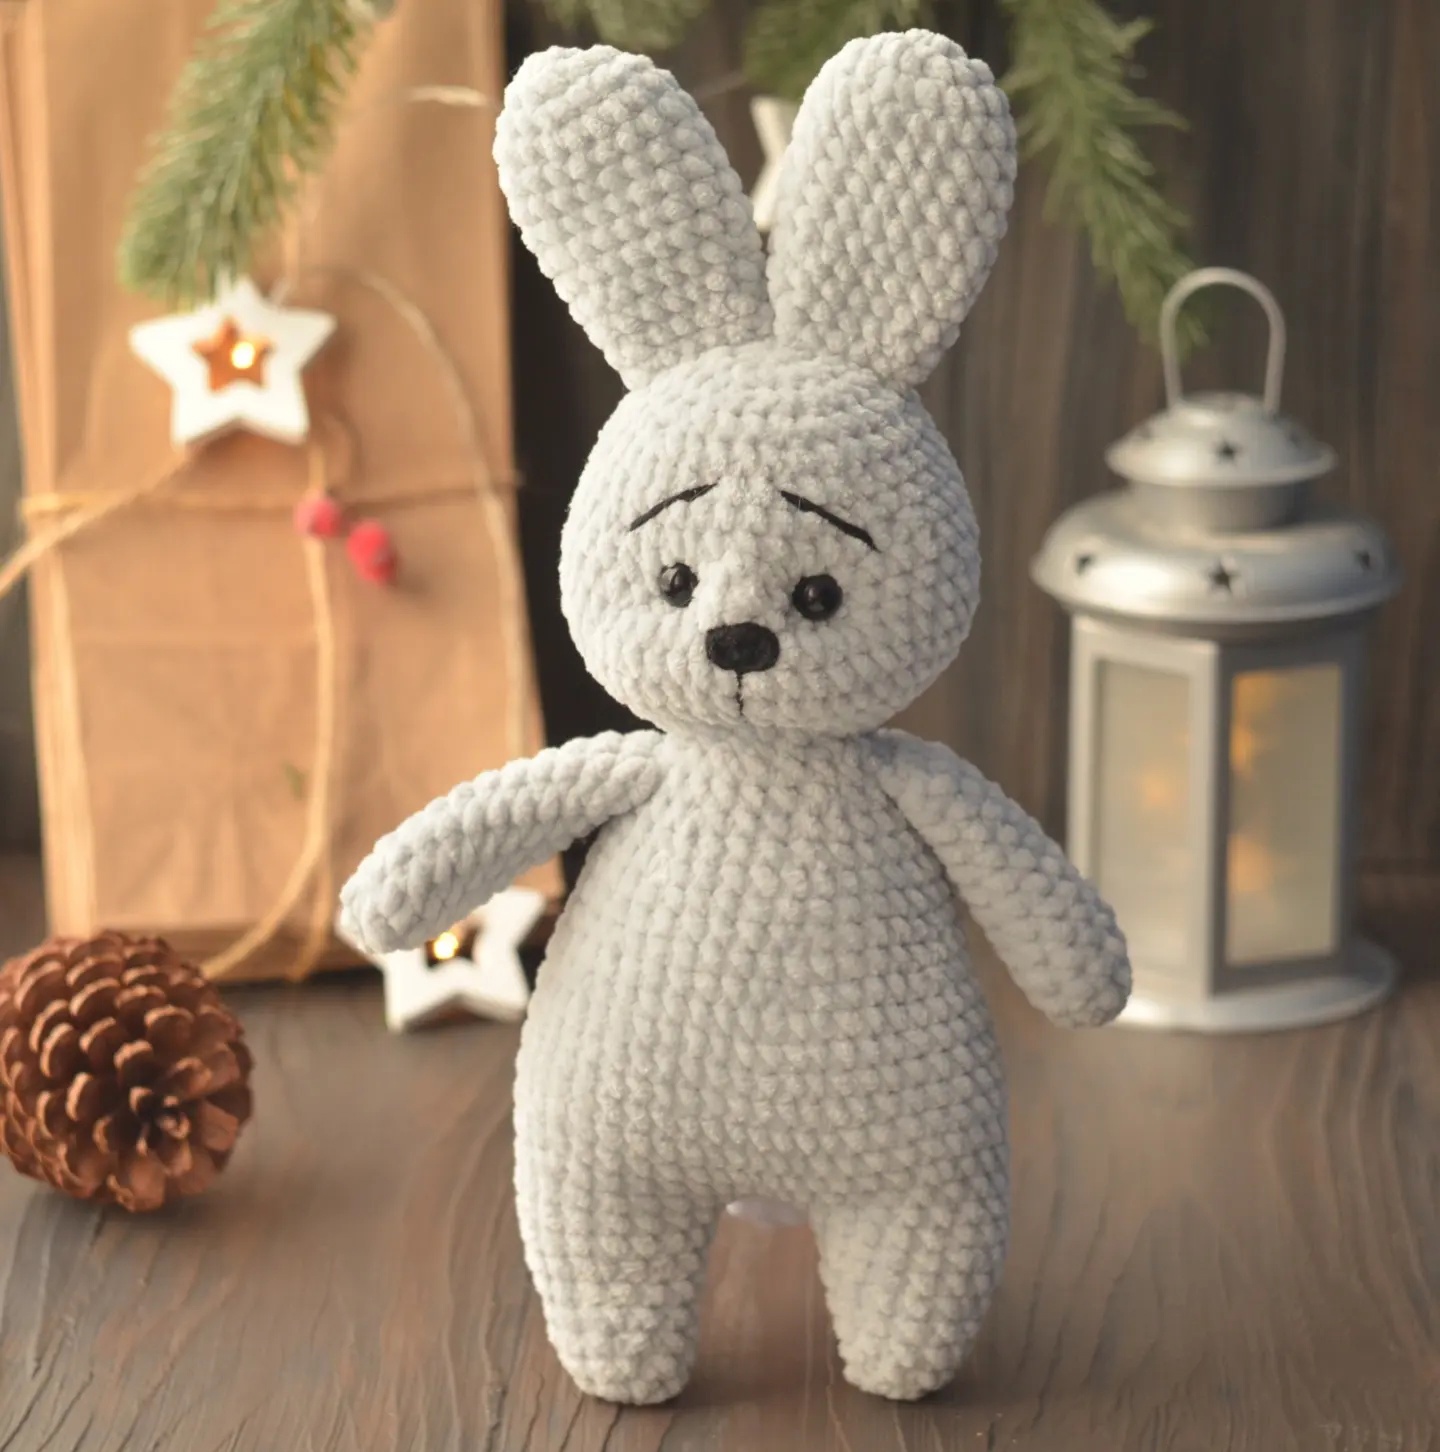 Bunny doll crochet kit, Crochet kit, Crochet materials, Amig